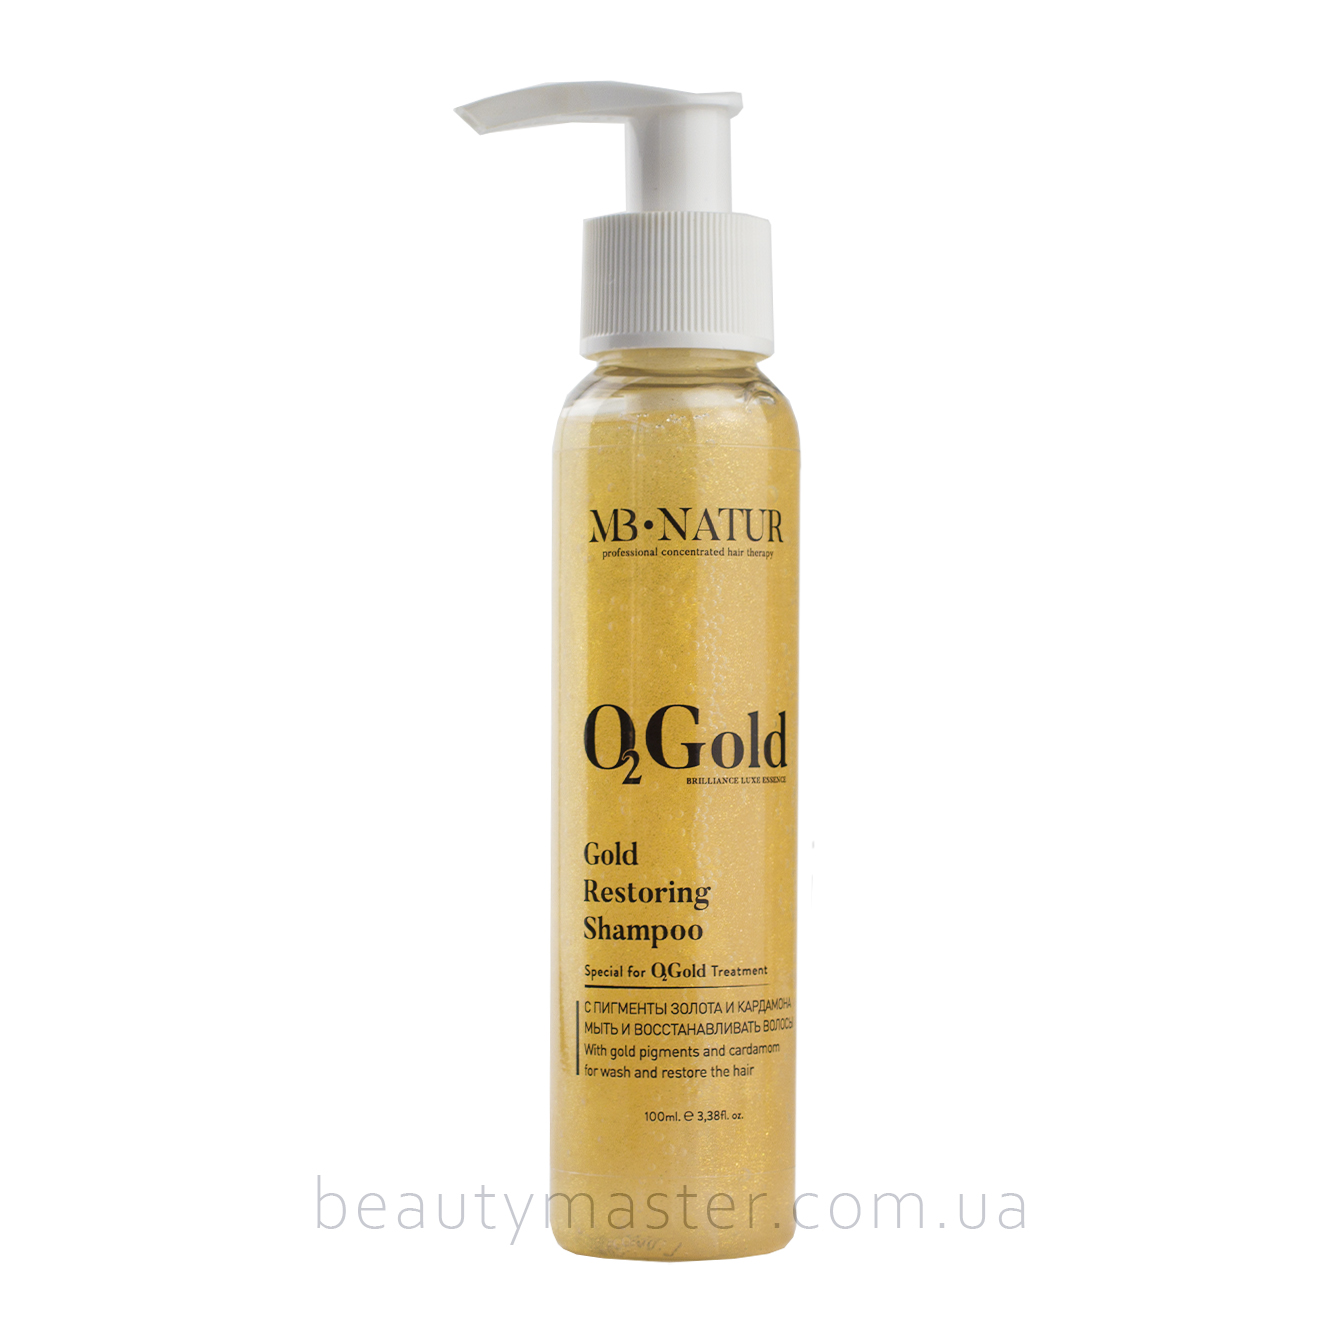 MB Natur Gold Restoring Shampoo 100 мл золотой шампунь премиум класса с кардамоном